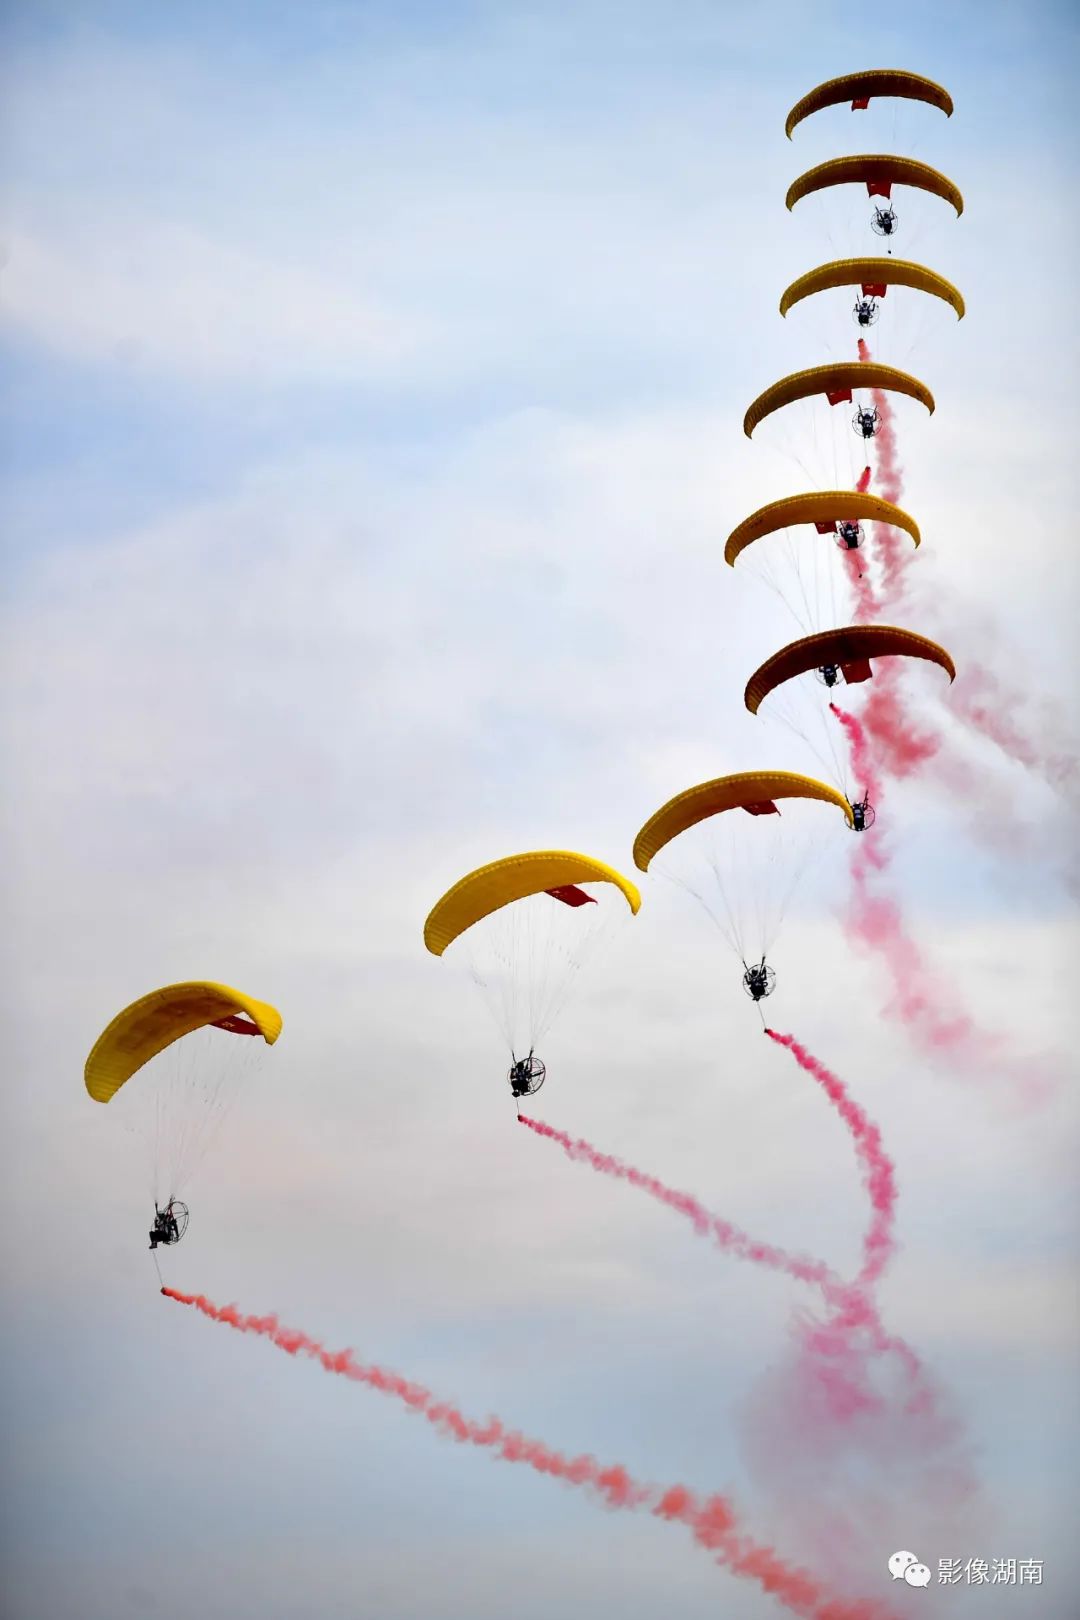 动力伞编队进行飞行表演,在空中划出一道美丽风景线